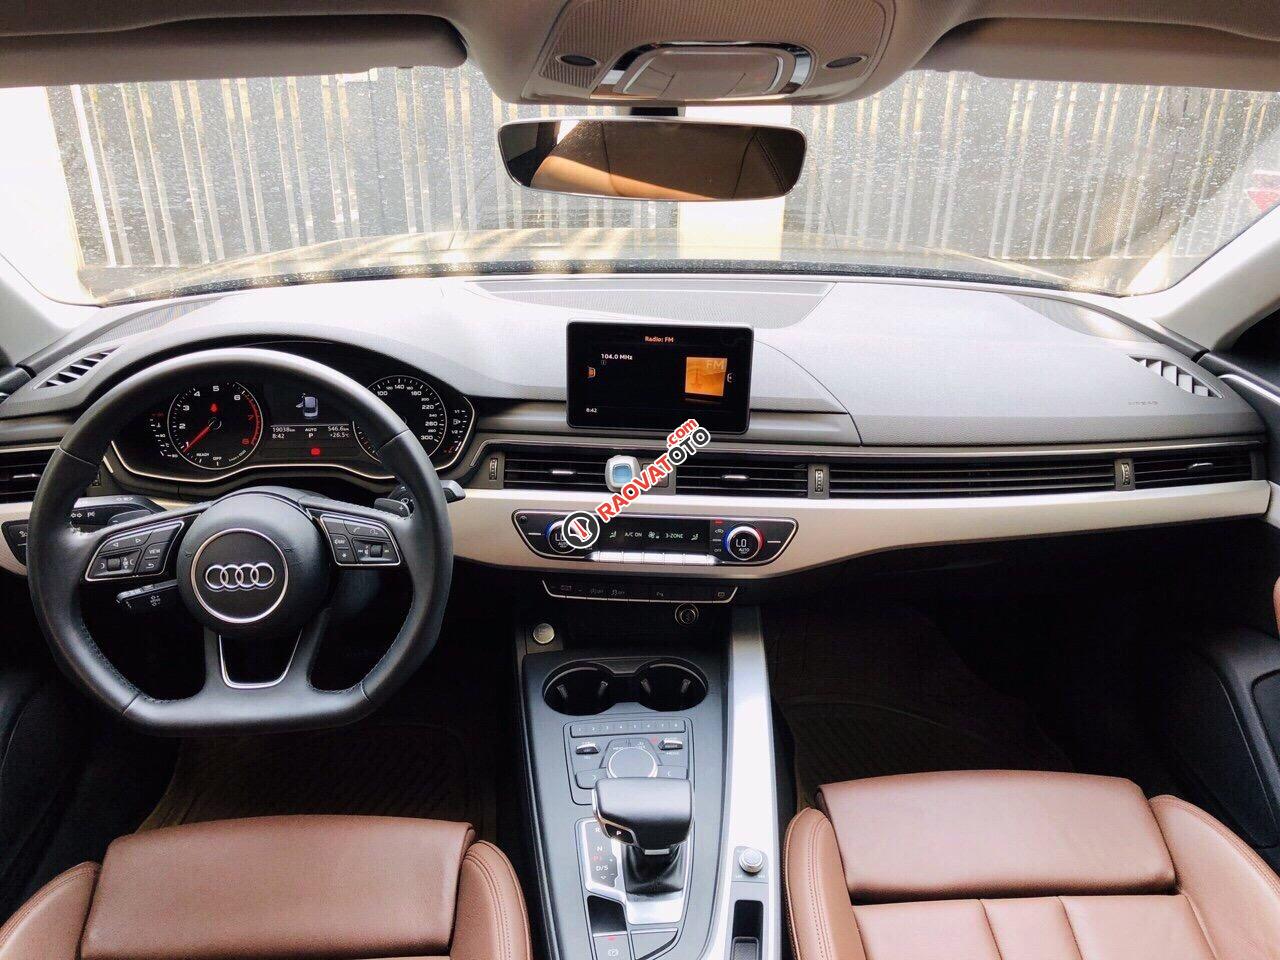 Bán Audi A4 2016 xe đi 21000km, bảo hành chính hãng, mẫu mới nhất hiện nay, chất lượng xe bao kiểm tra hãng-4